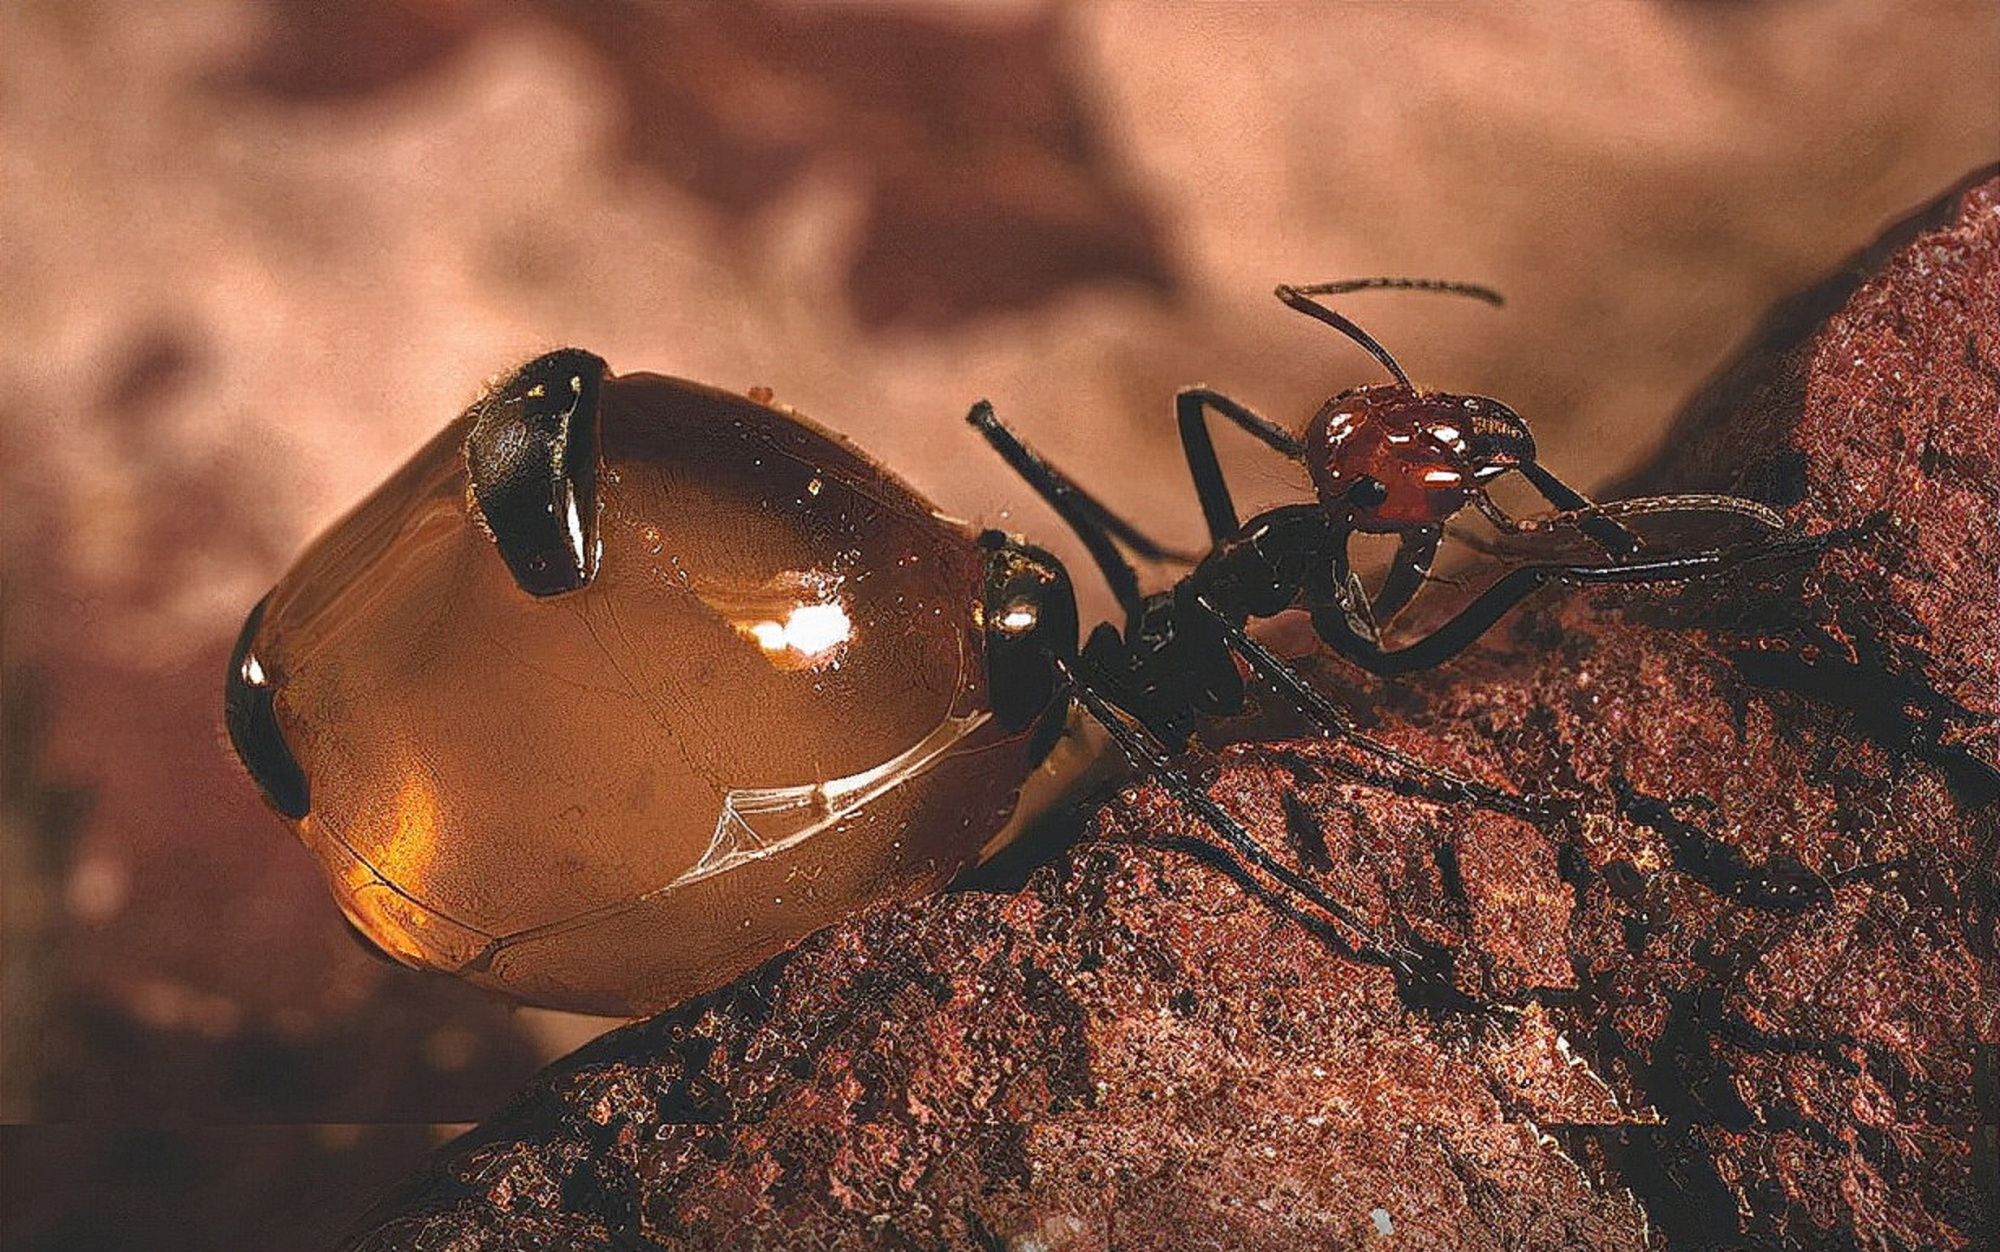 世界上最大的蚂蚁可怕图片